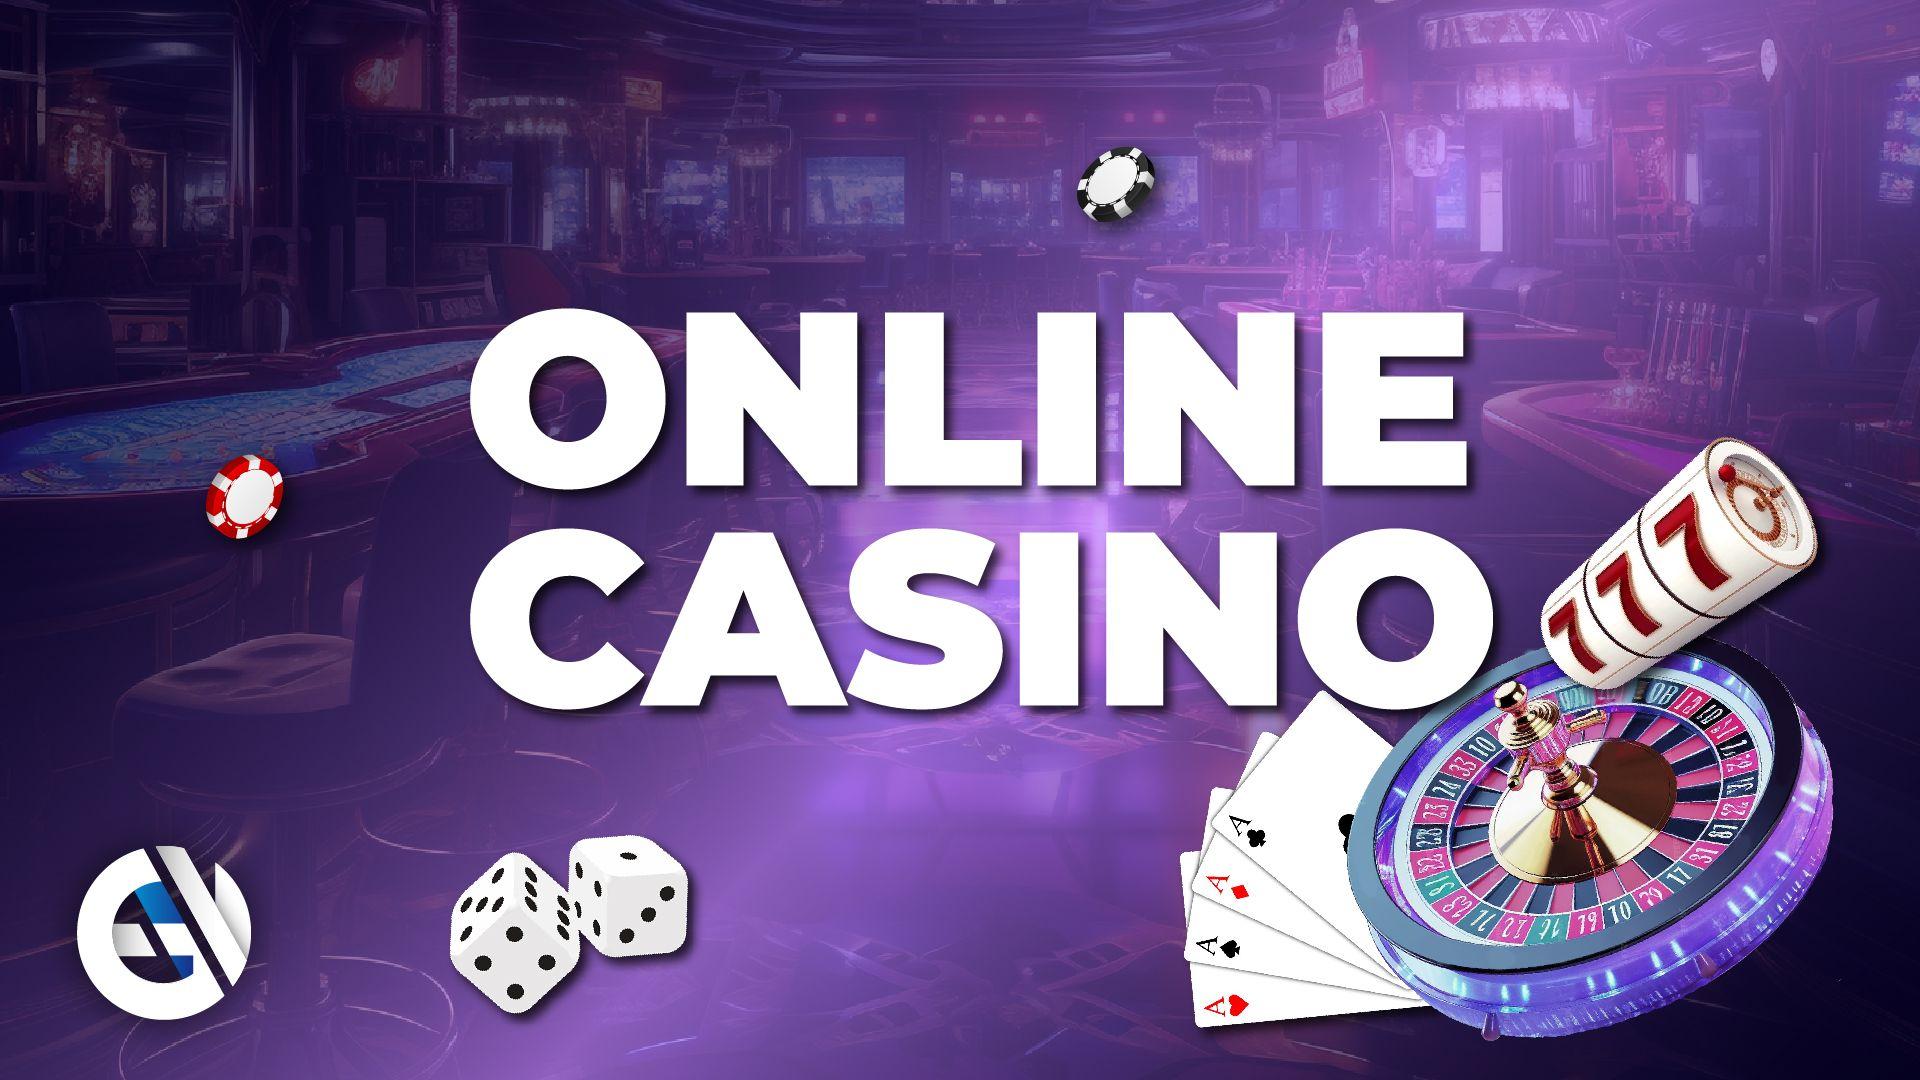 Zasady etyczne w zachowaniach kasyn online to "niewypowiedziane reguły"